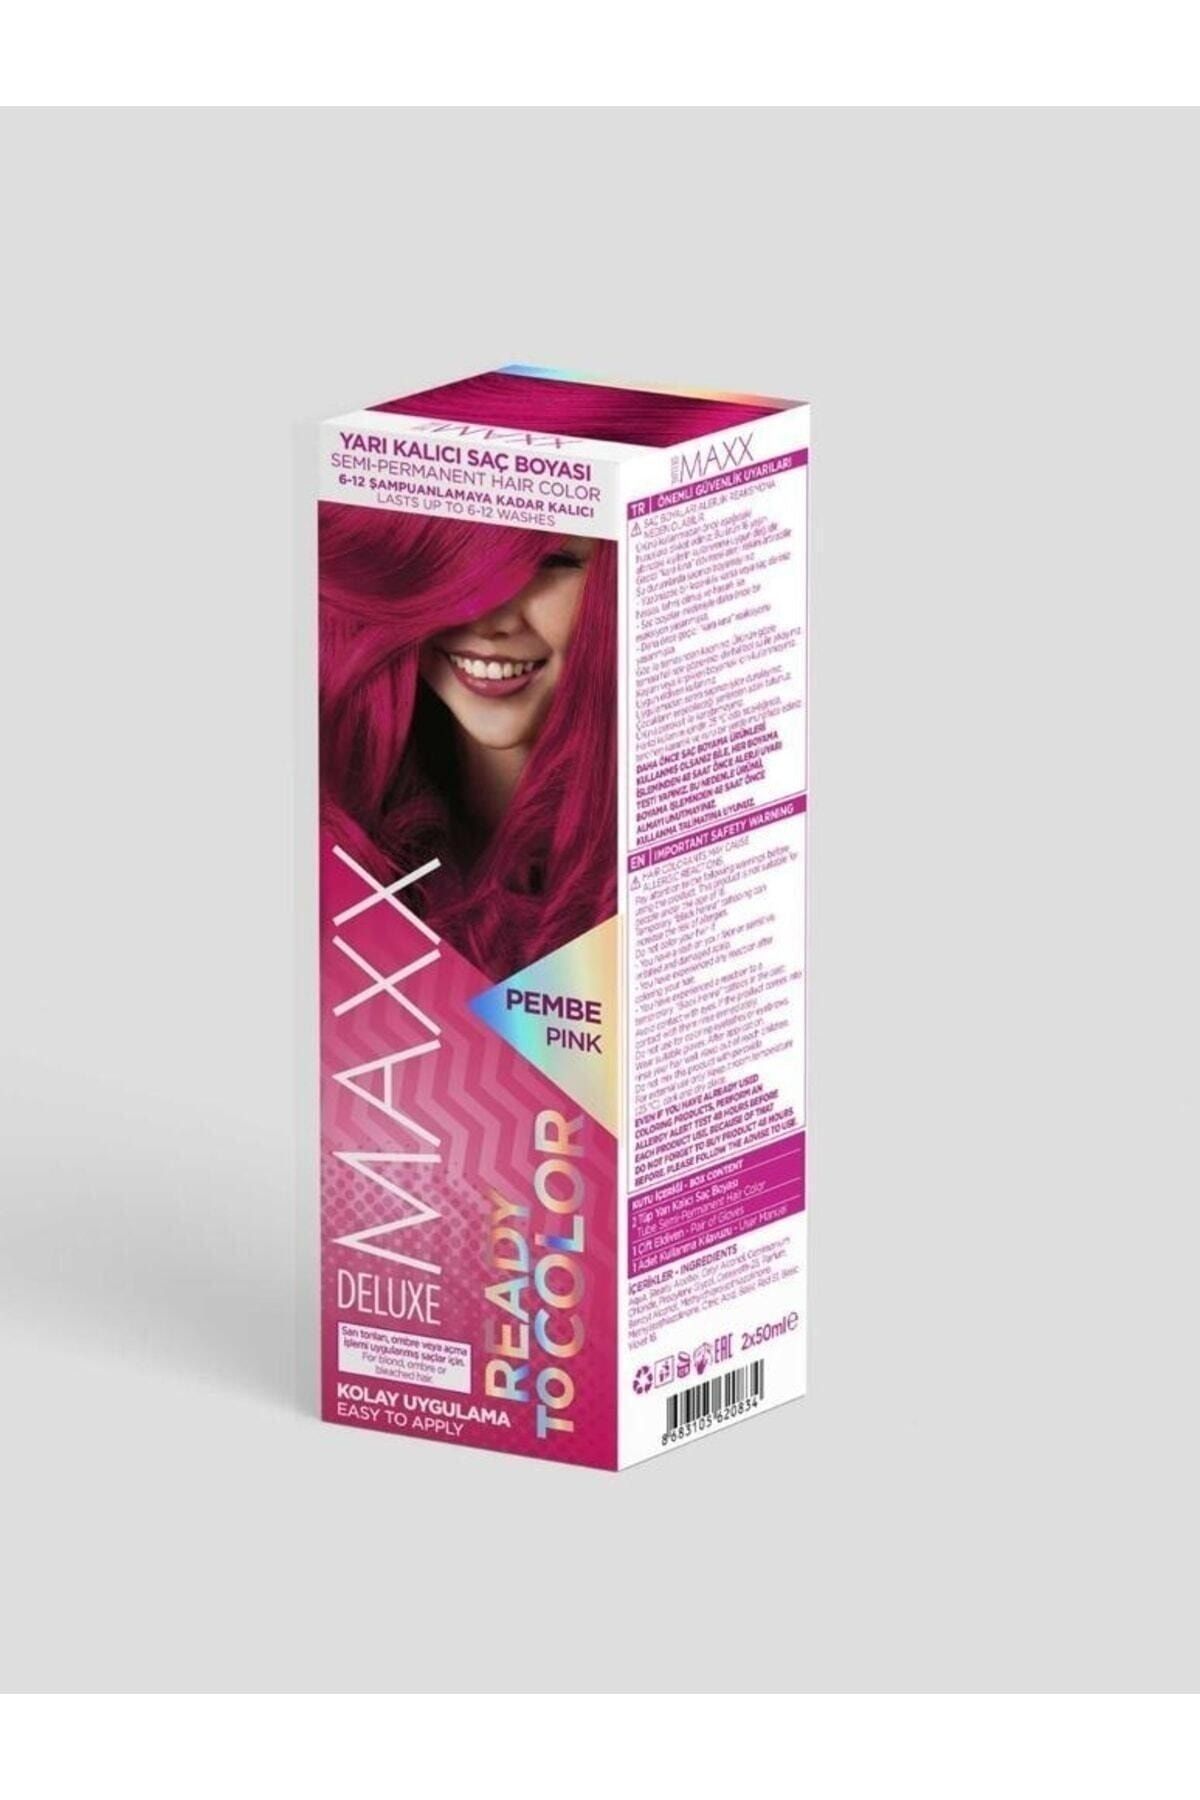 MAXX DELUXE Yarı Kalıcı Süper Saç Boyası Pembe Pink Ready To Color G-k Hair Center